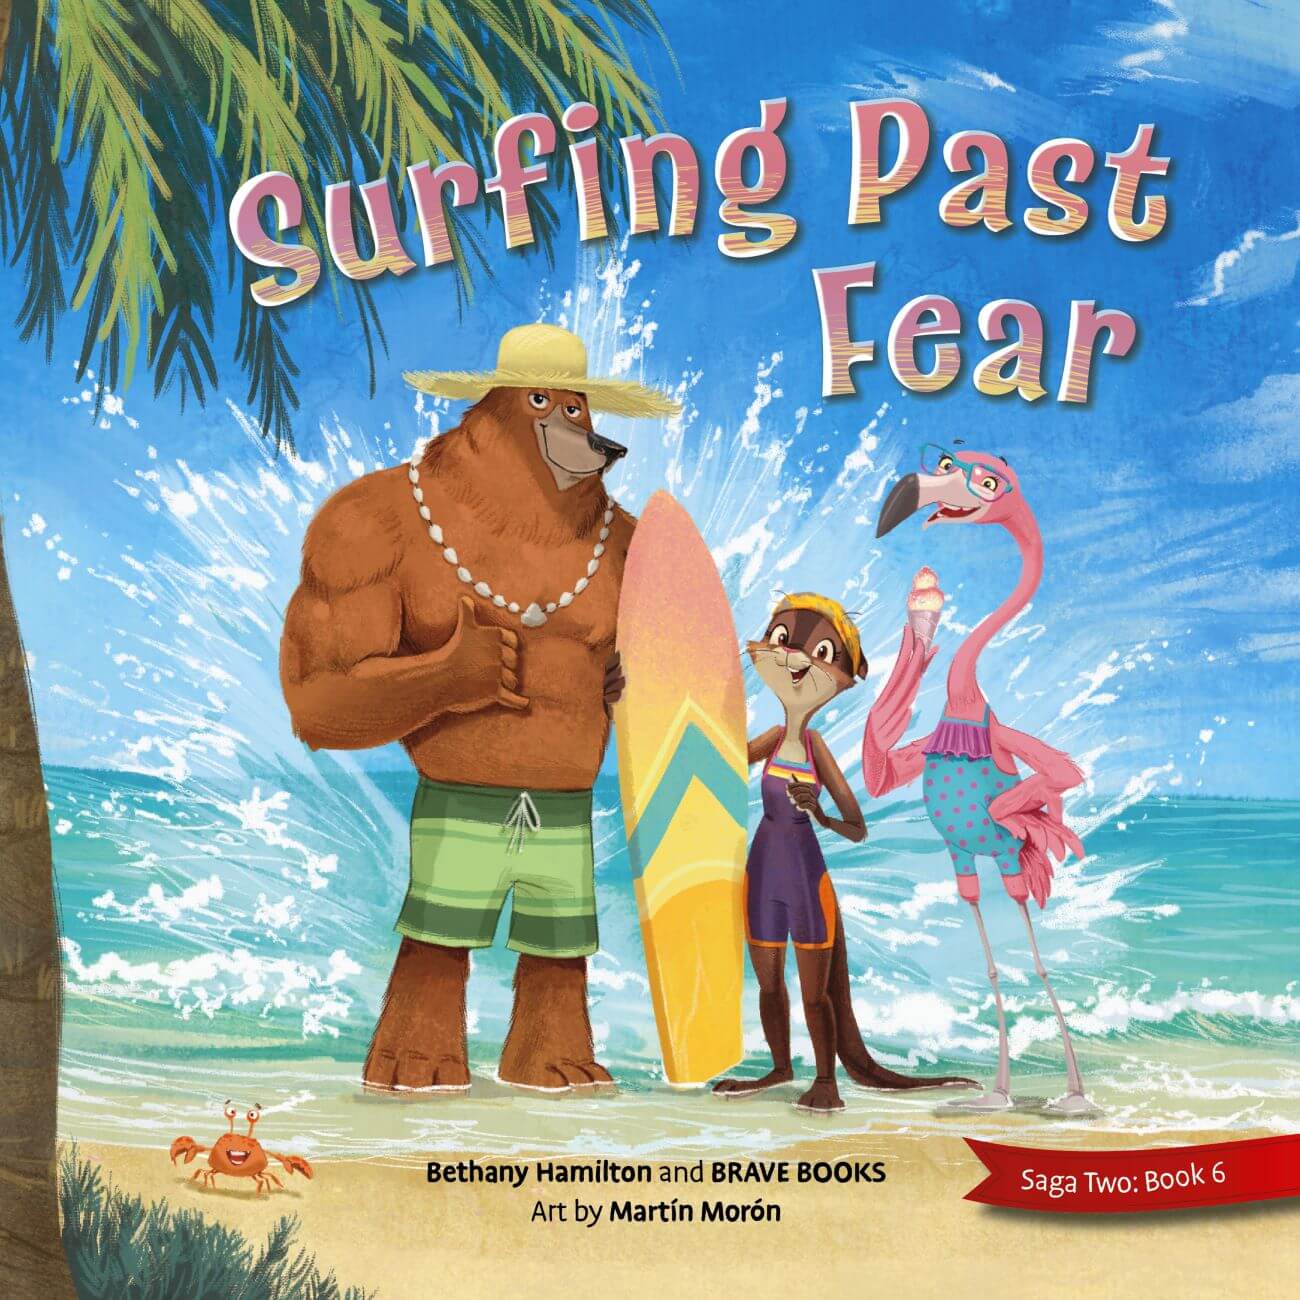 Surfing Past Fear Bundle